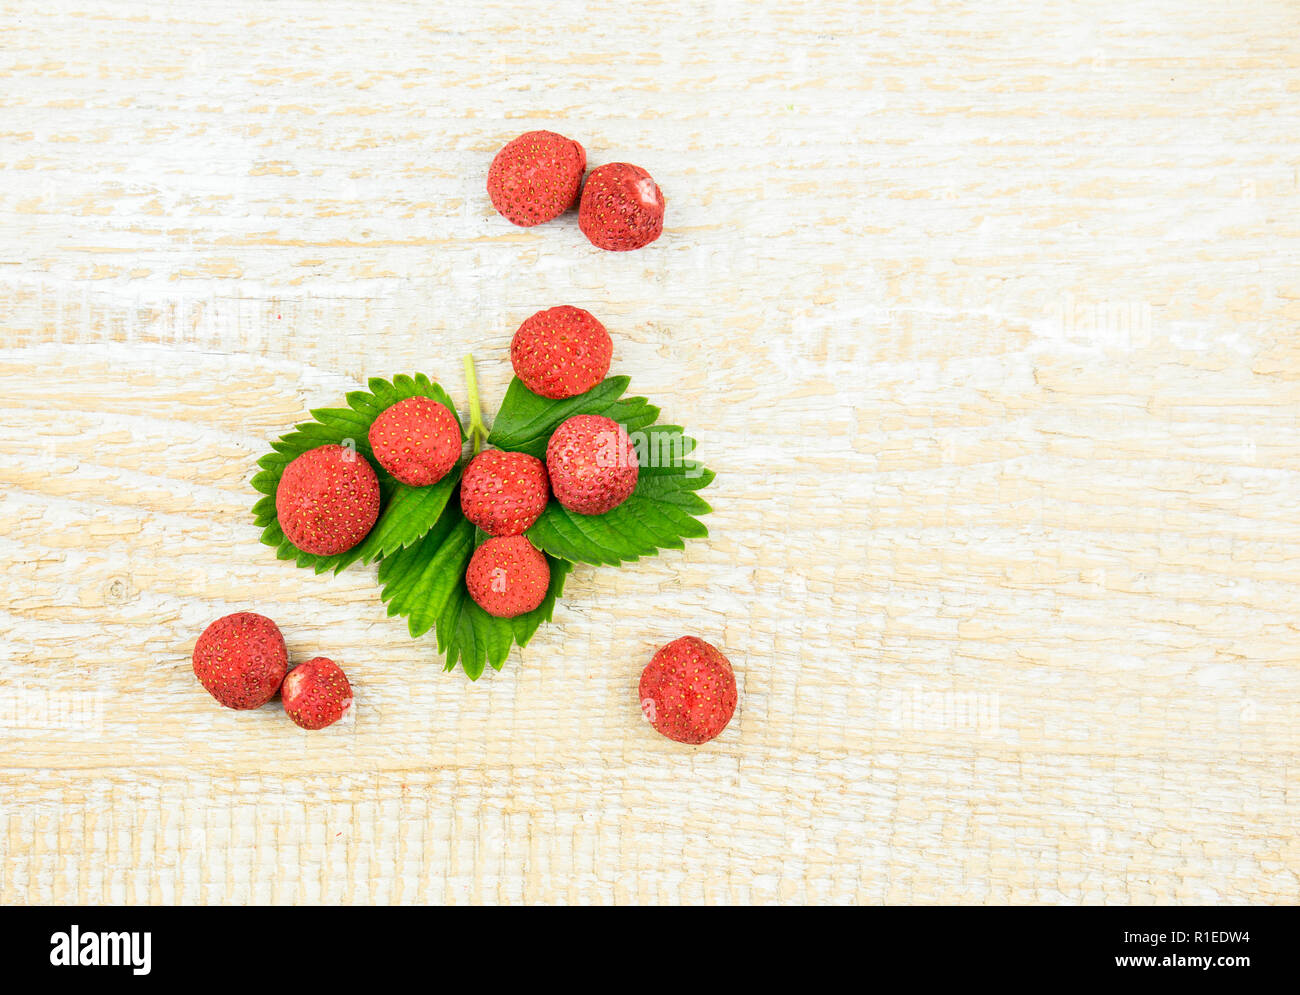 Gefriergetrocknete ganze Stücke von Erdbeeren auf grüne Erdbeere Blatt, gesunden Snack voller Vitamine und Ernährung auf natürliche Holz- Hintergrund. Stockfoto